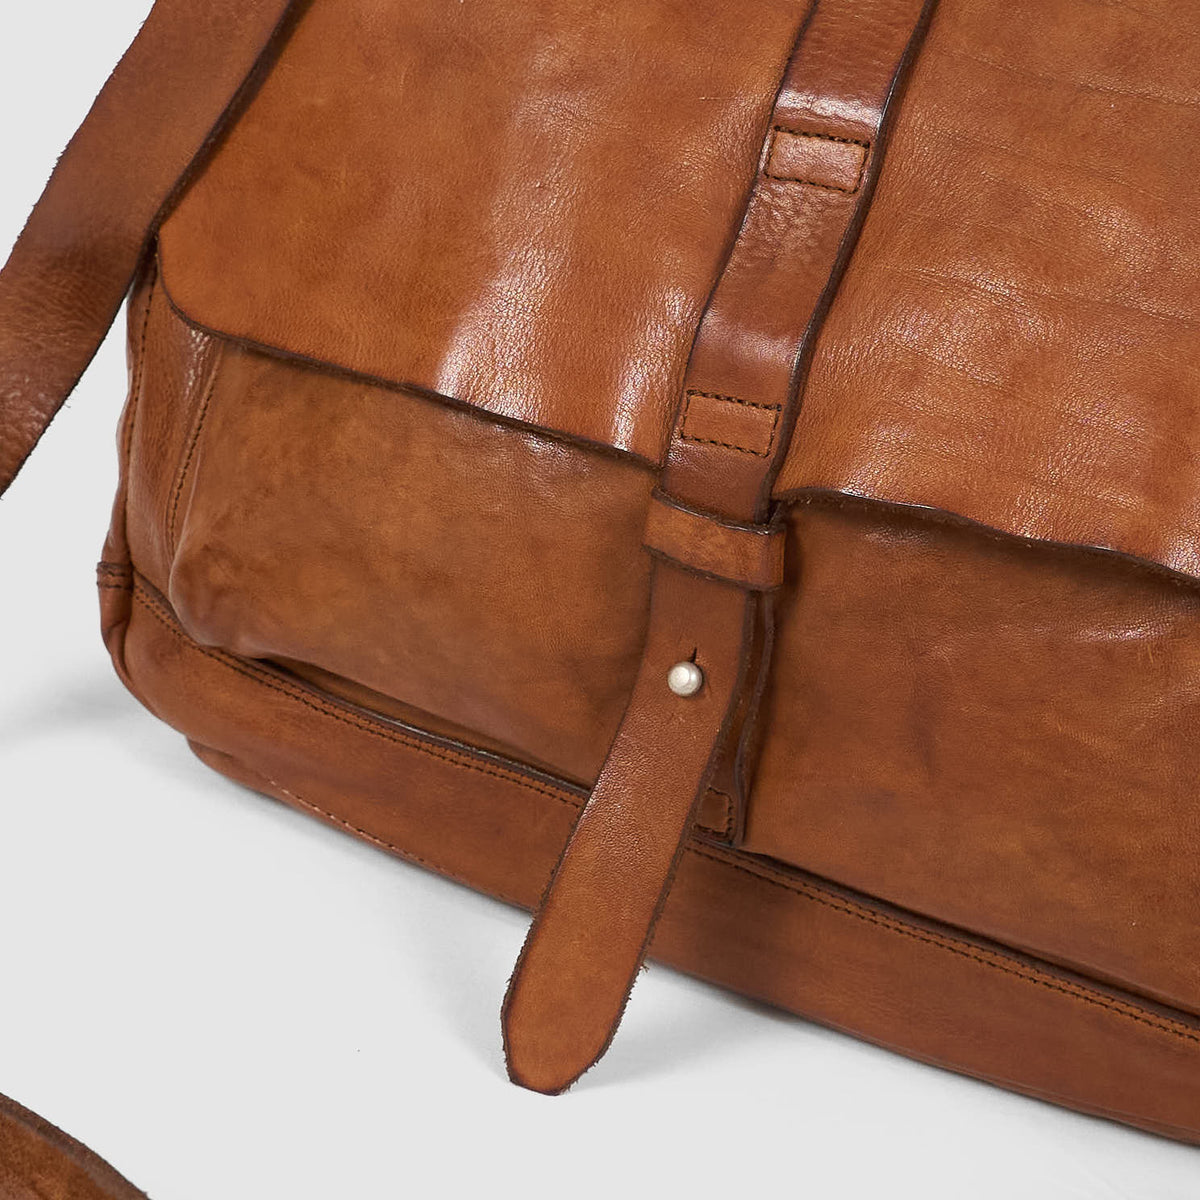 Campomaggi Large Leather Shoulder Bag